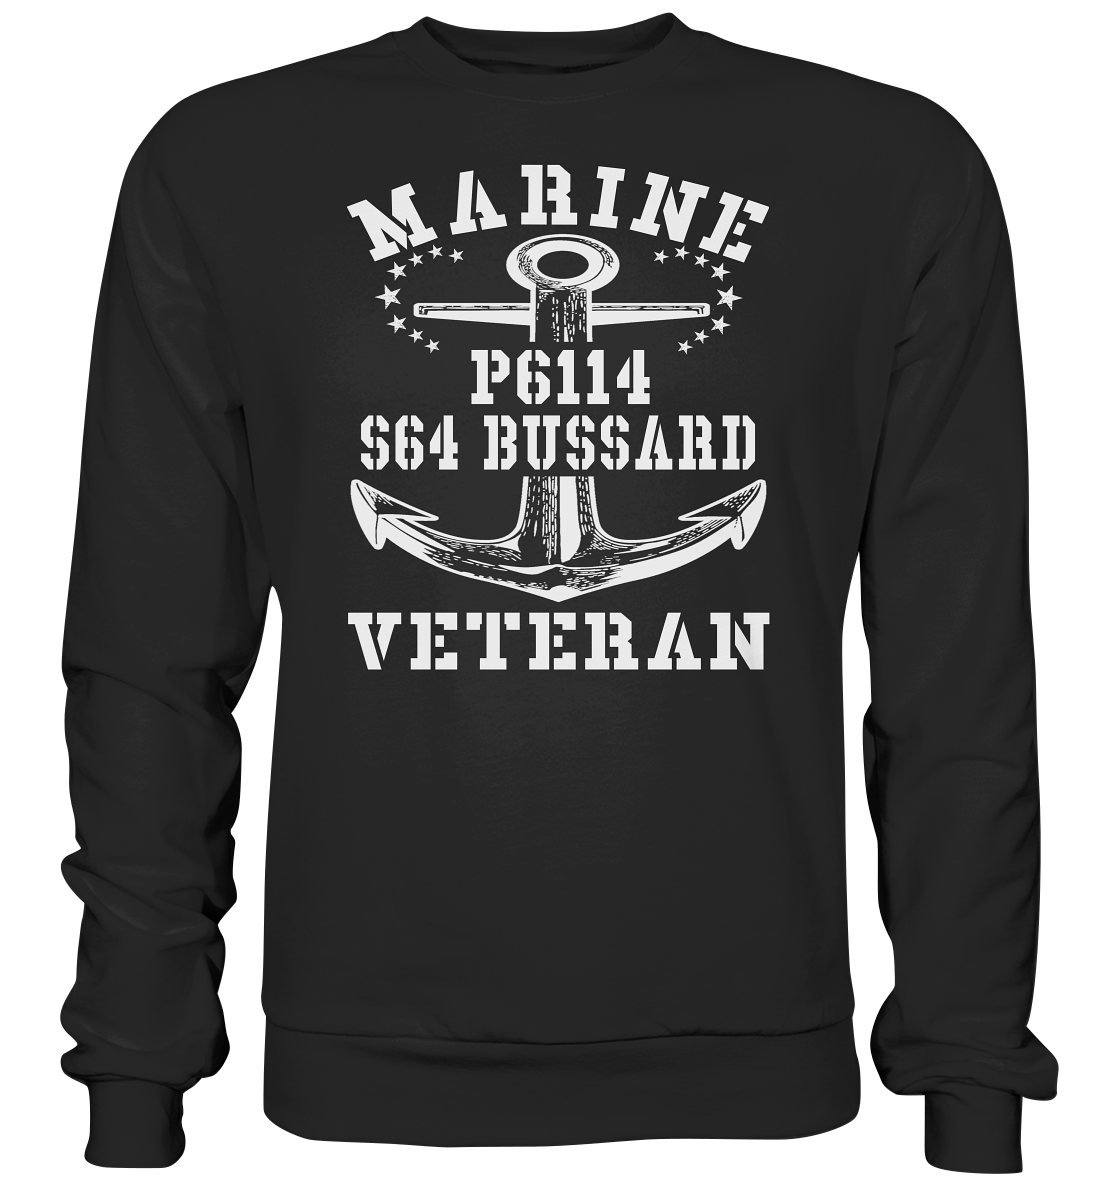 FK-Schnellboot P6114 BUSSARD Marine Veteran - Premium Sweatshirt